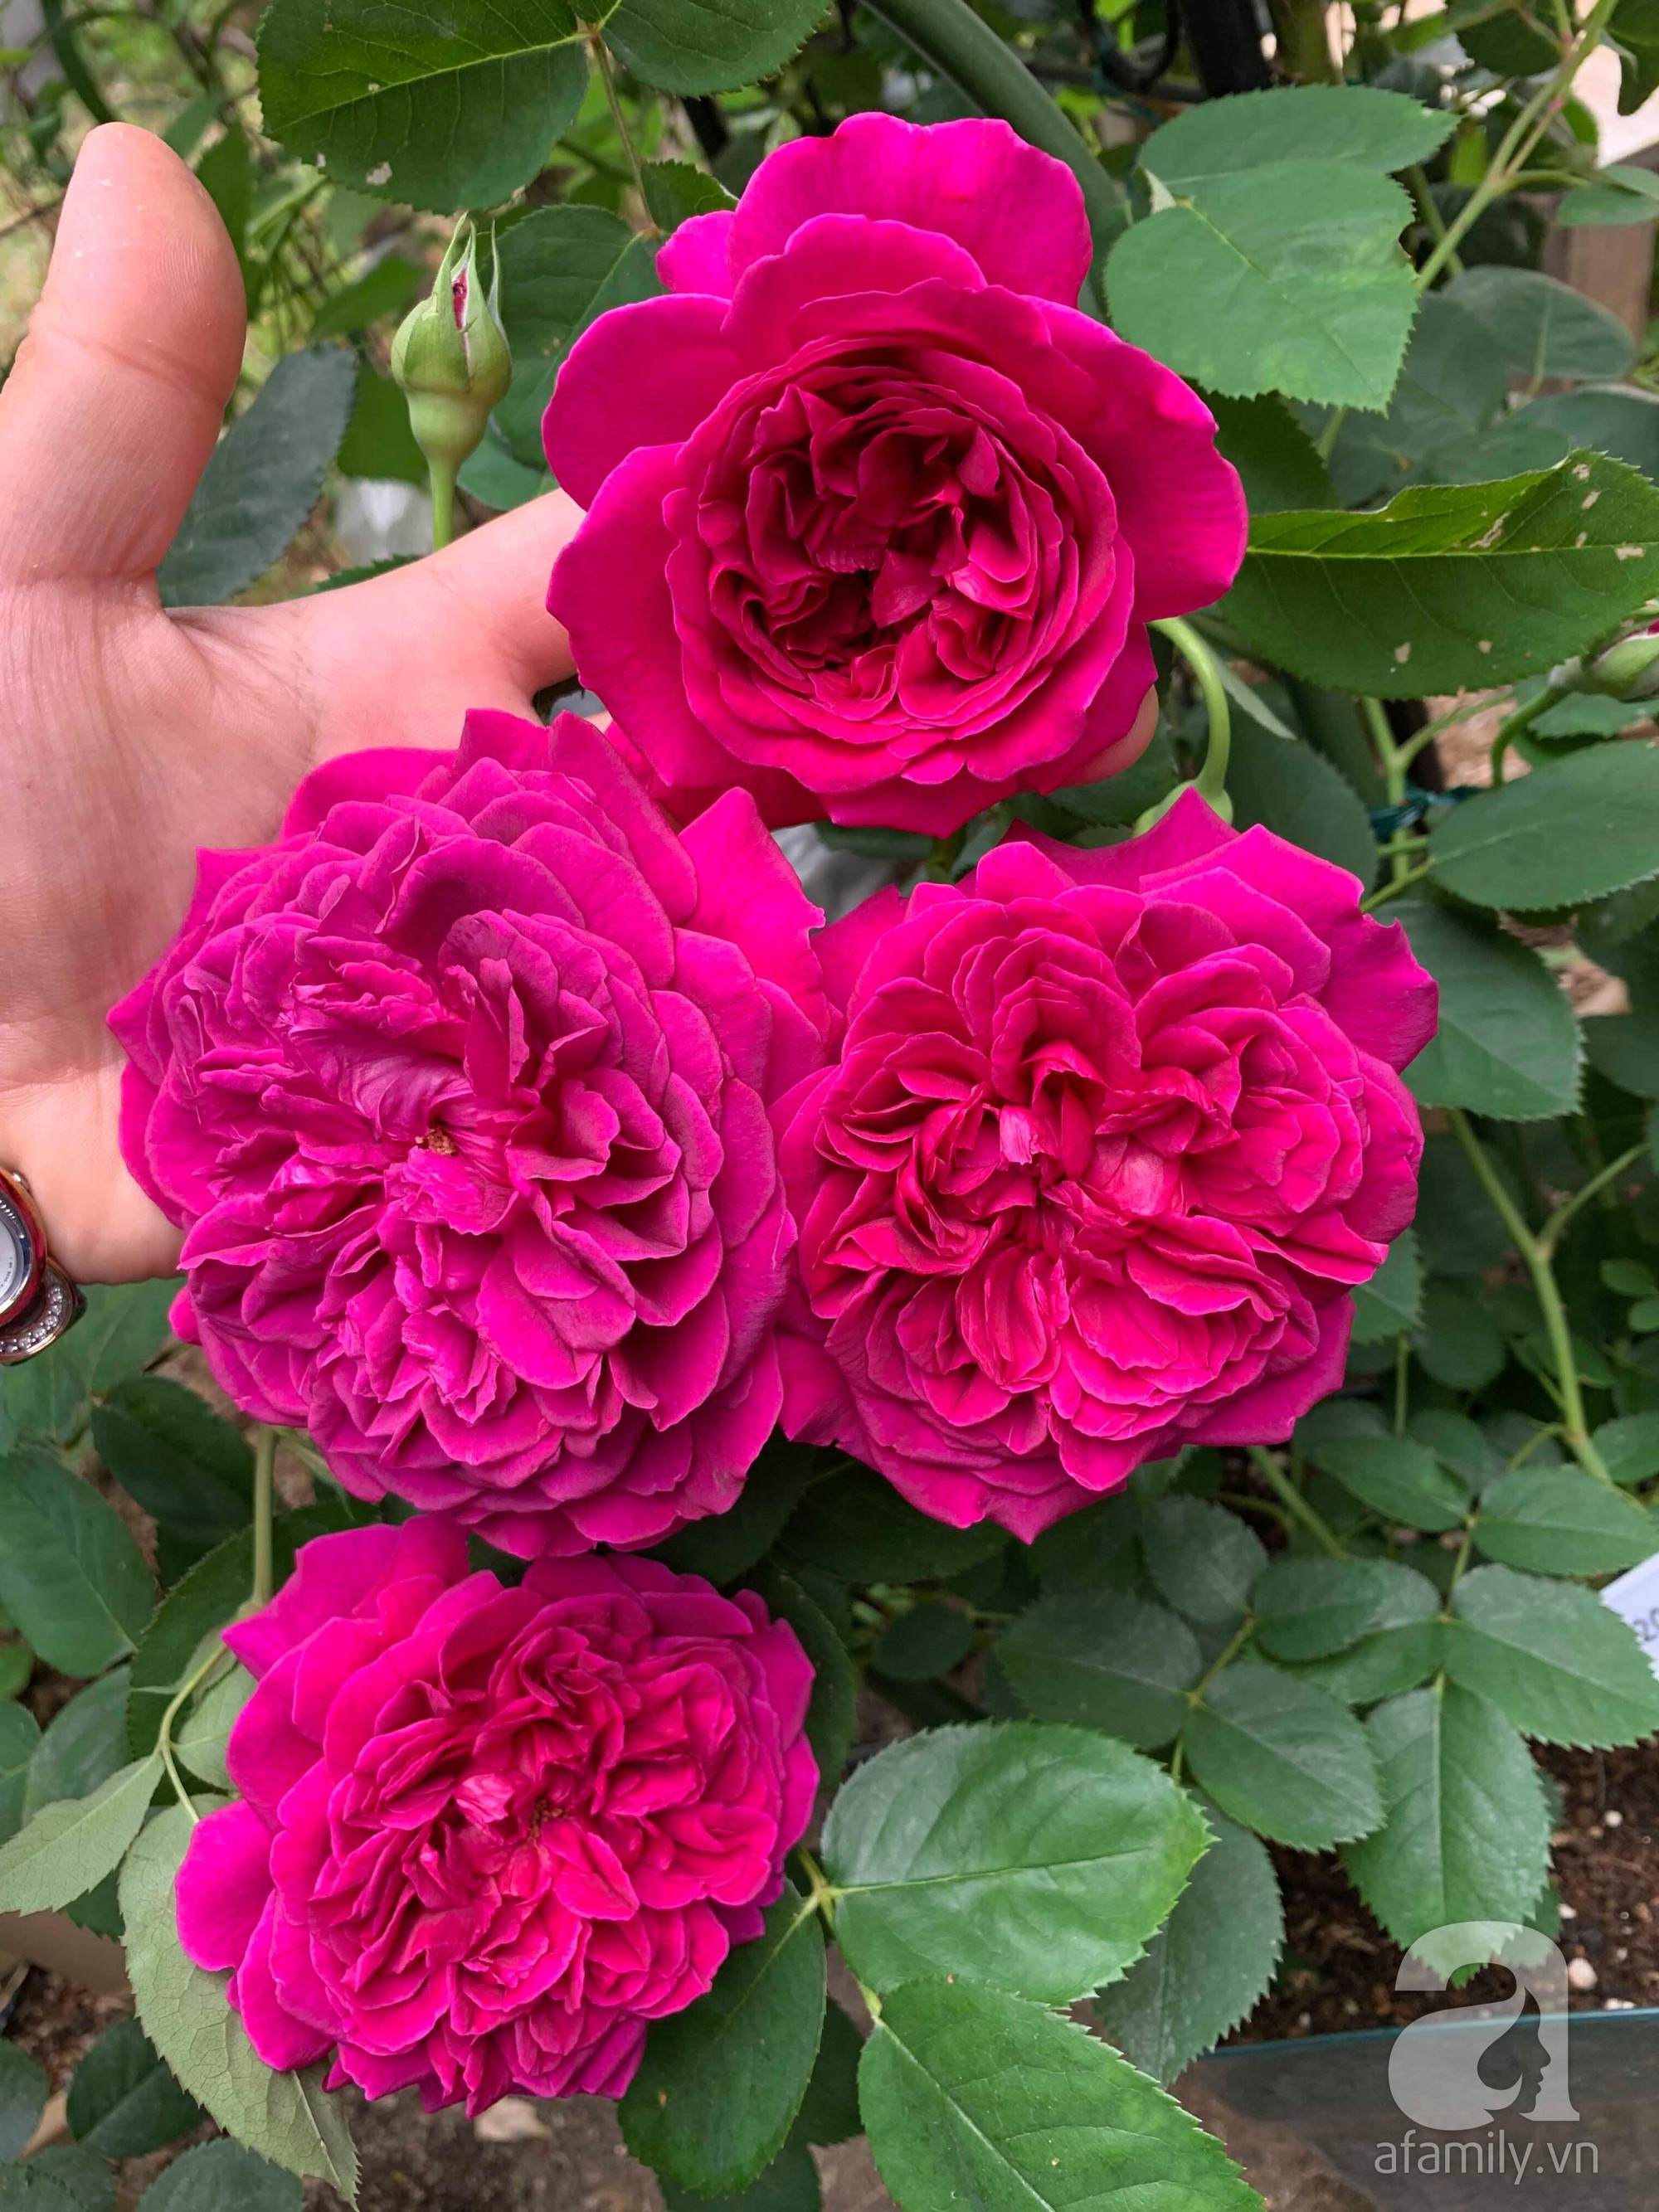 Góc vườn 20m² thơm ngát hoa hồng đủ loại của nữ giám đốc Việt ở Nhật Bản - Ảnh 11.